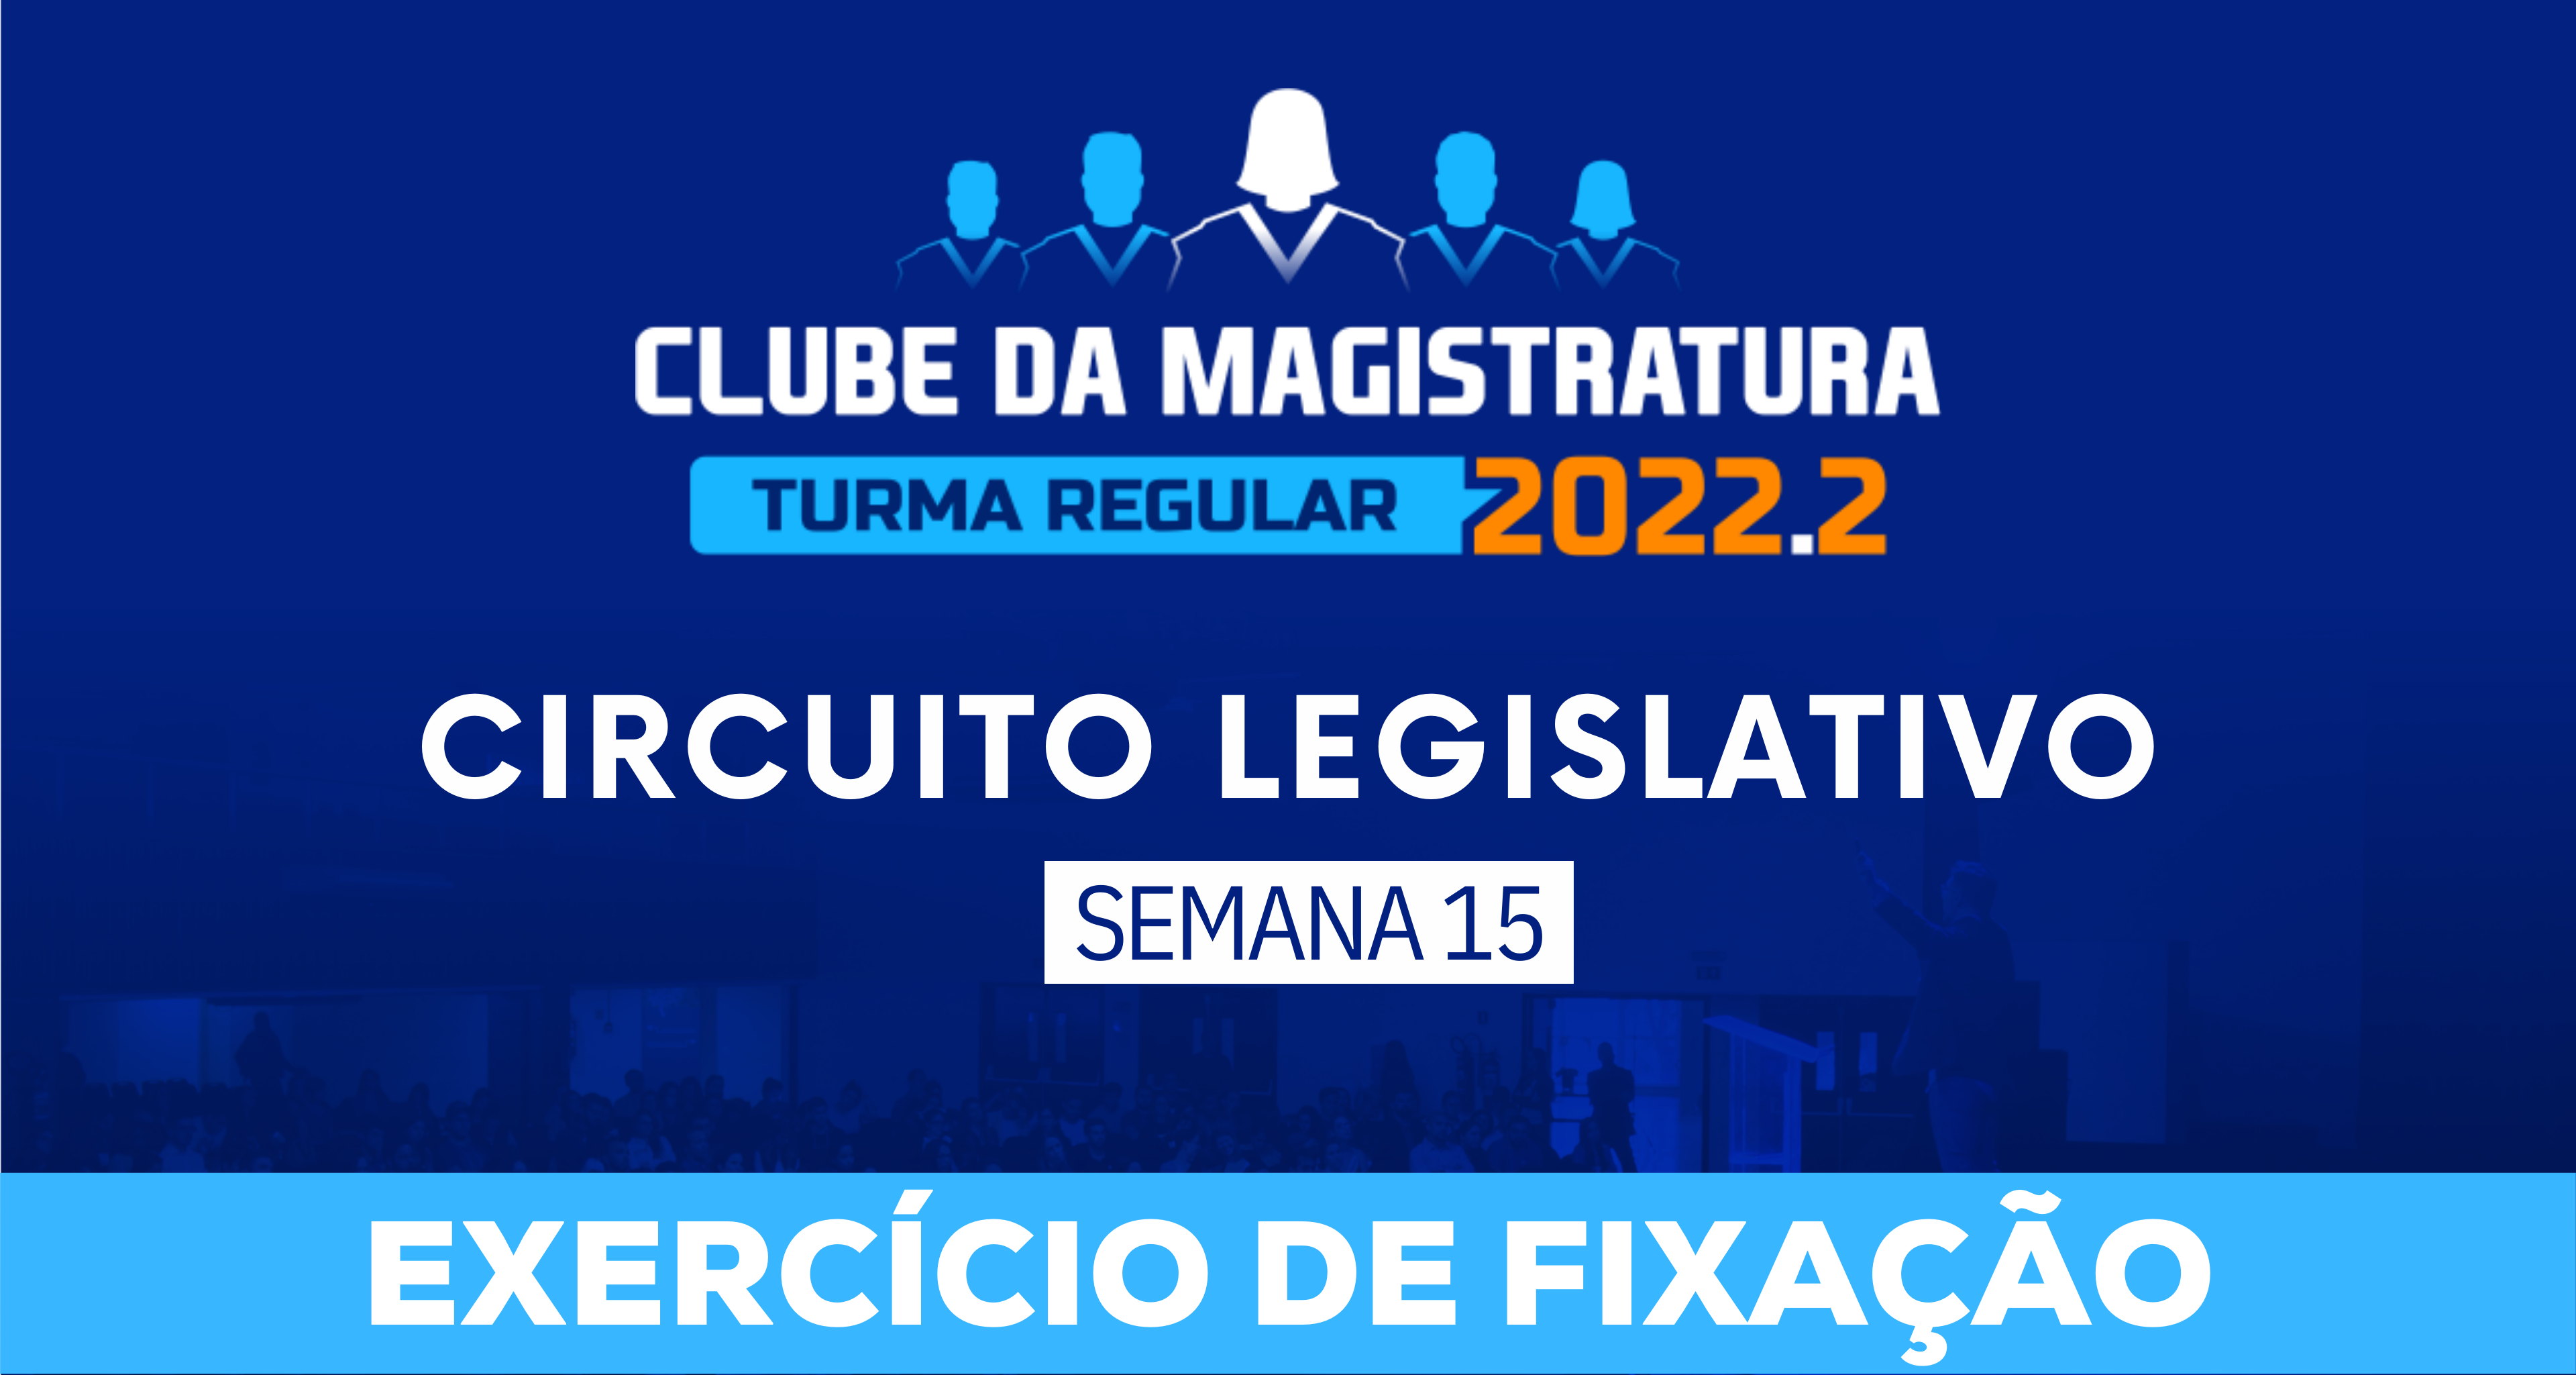 Circuito Legislativo 2022.2 (Clube da Magistratura - Semana 15)